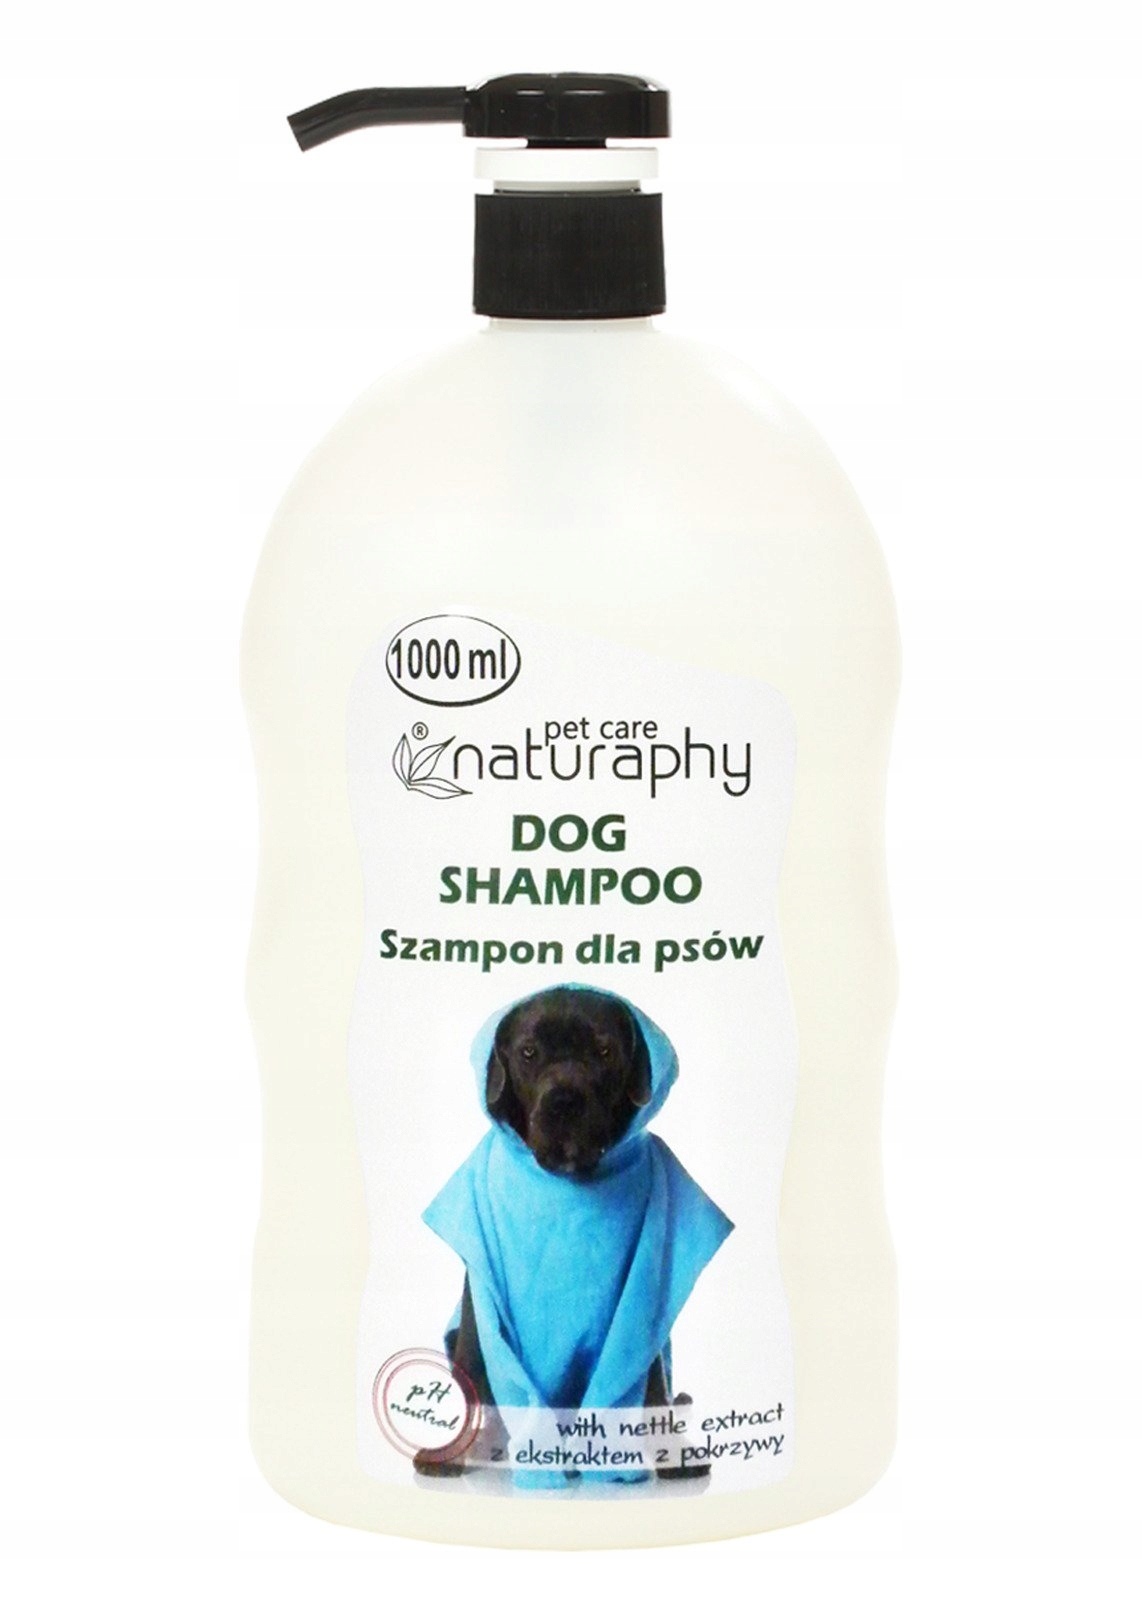 szampon dla czarnych psów długowłosych